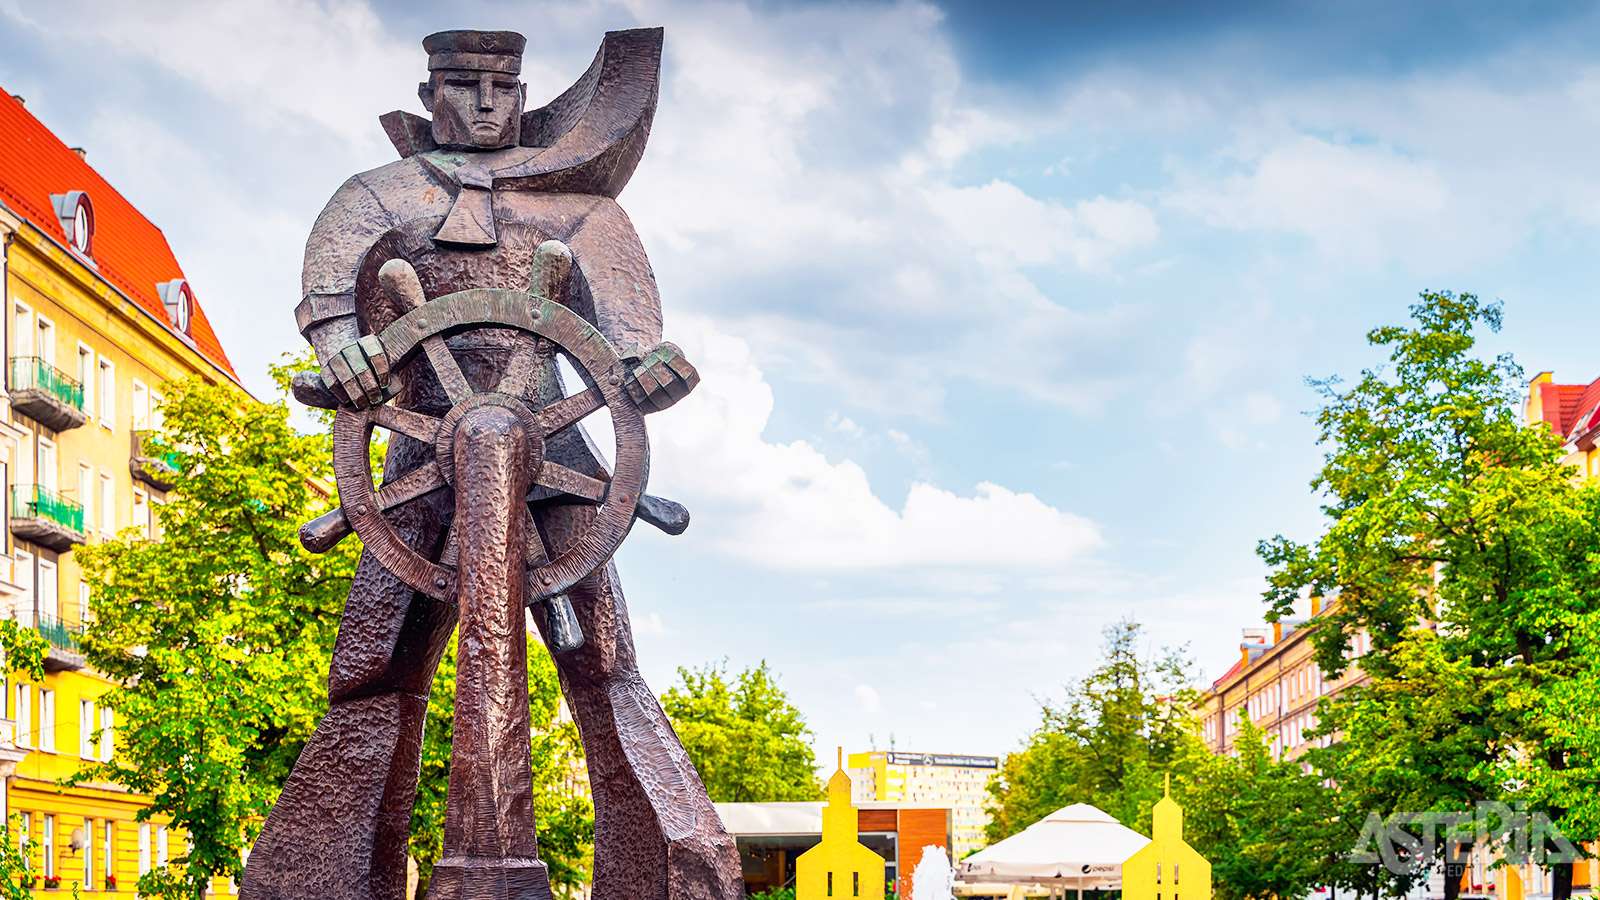 Het Memento Park aan de rand van de stad toont standbeelden uit de communistische tijd